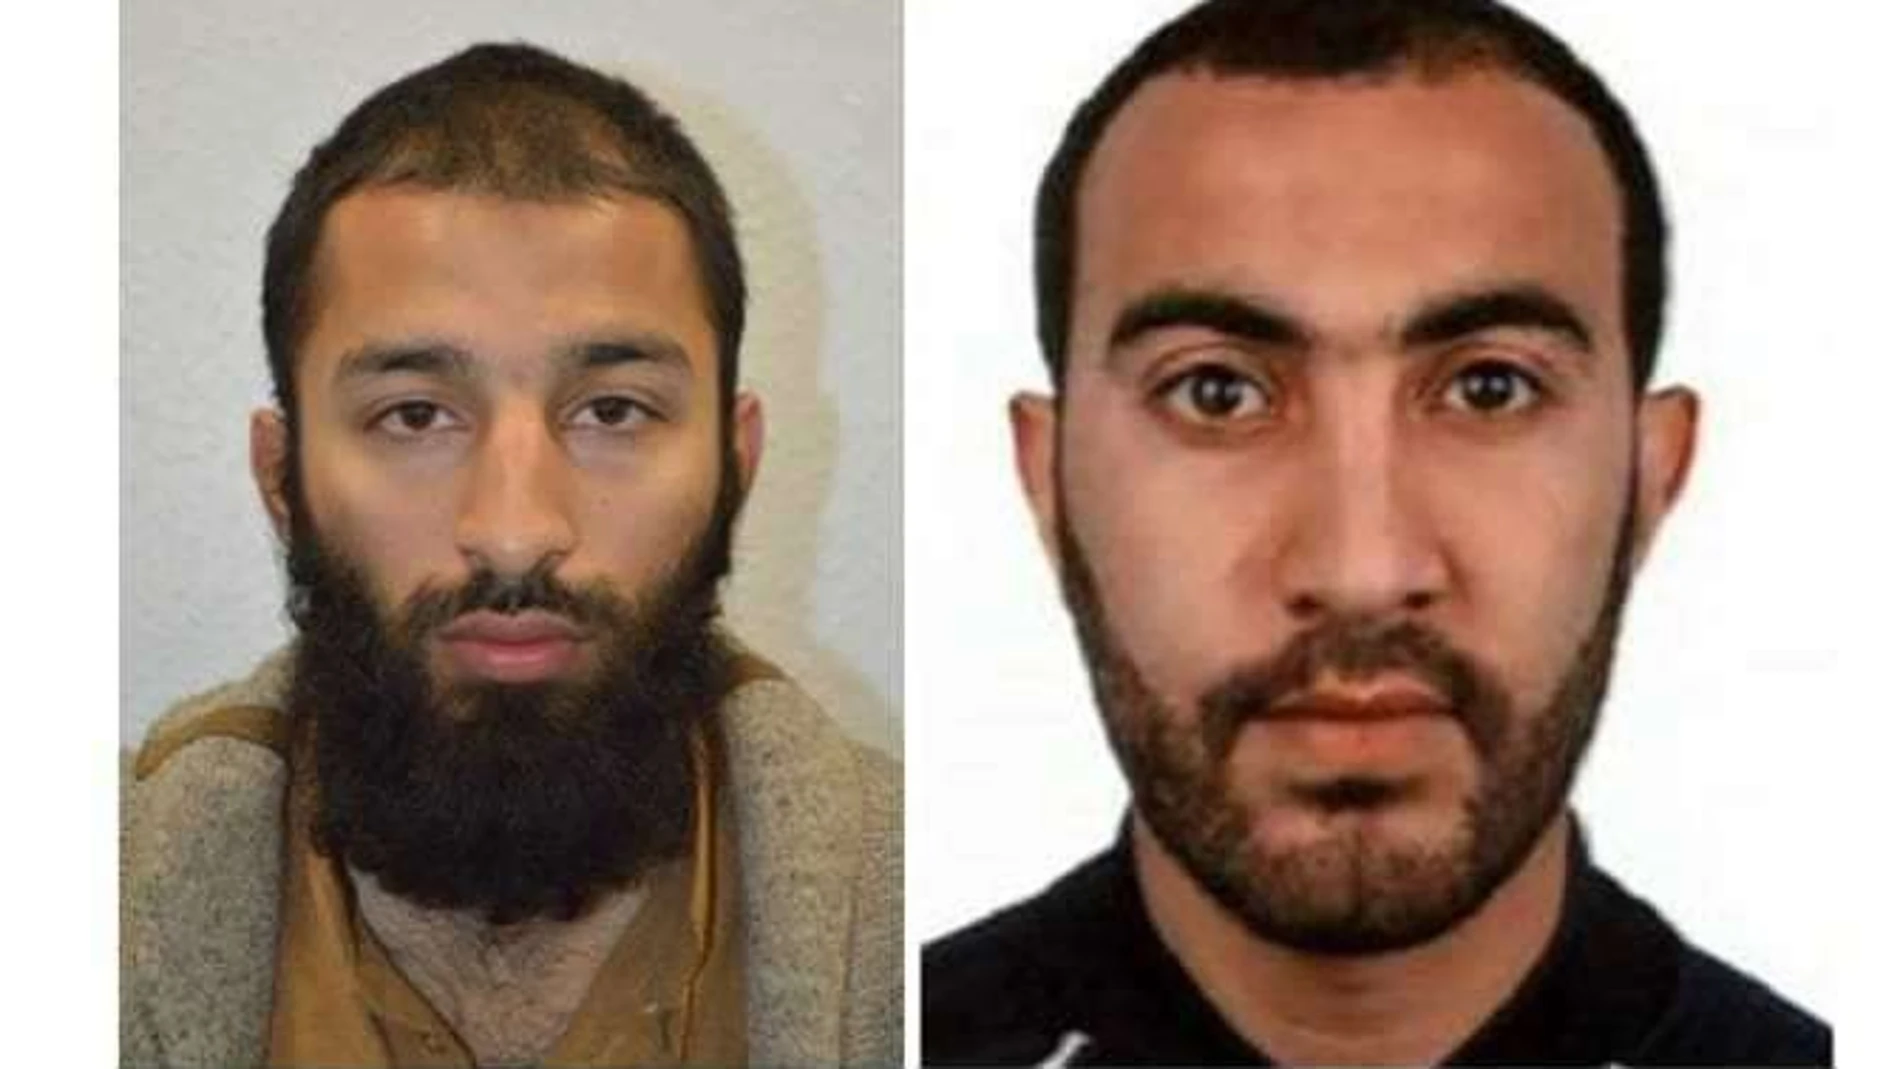 Identidad de dos de los terroristas que atentaron en Londres